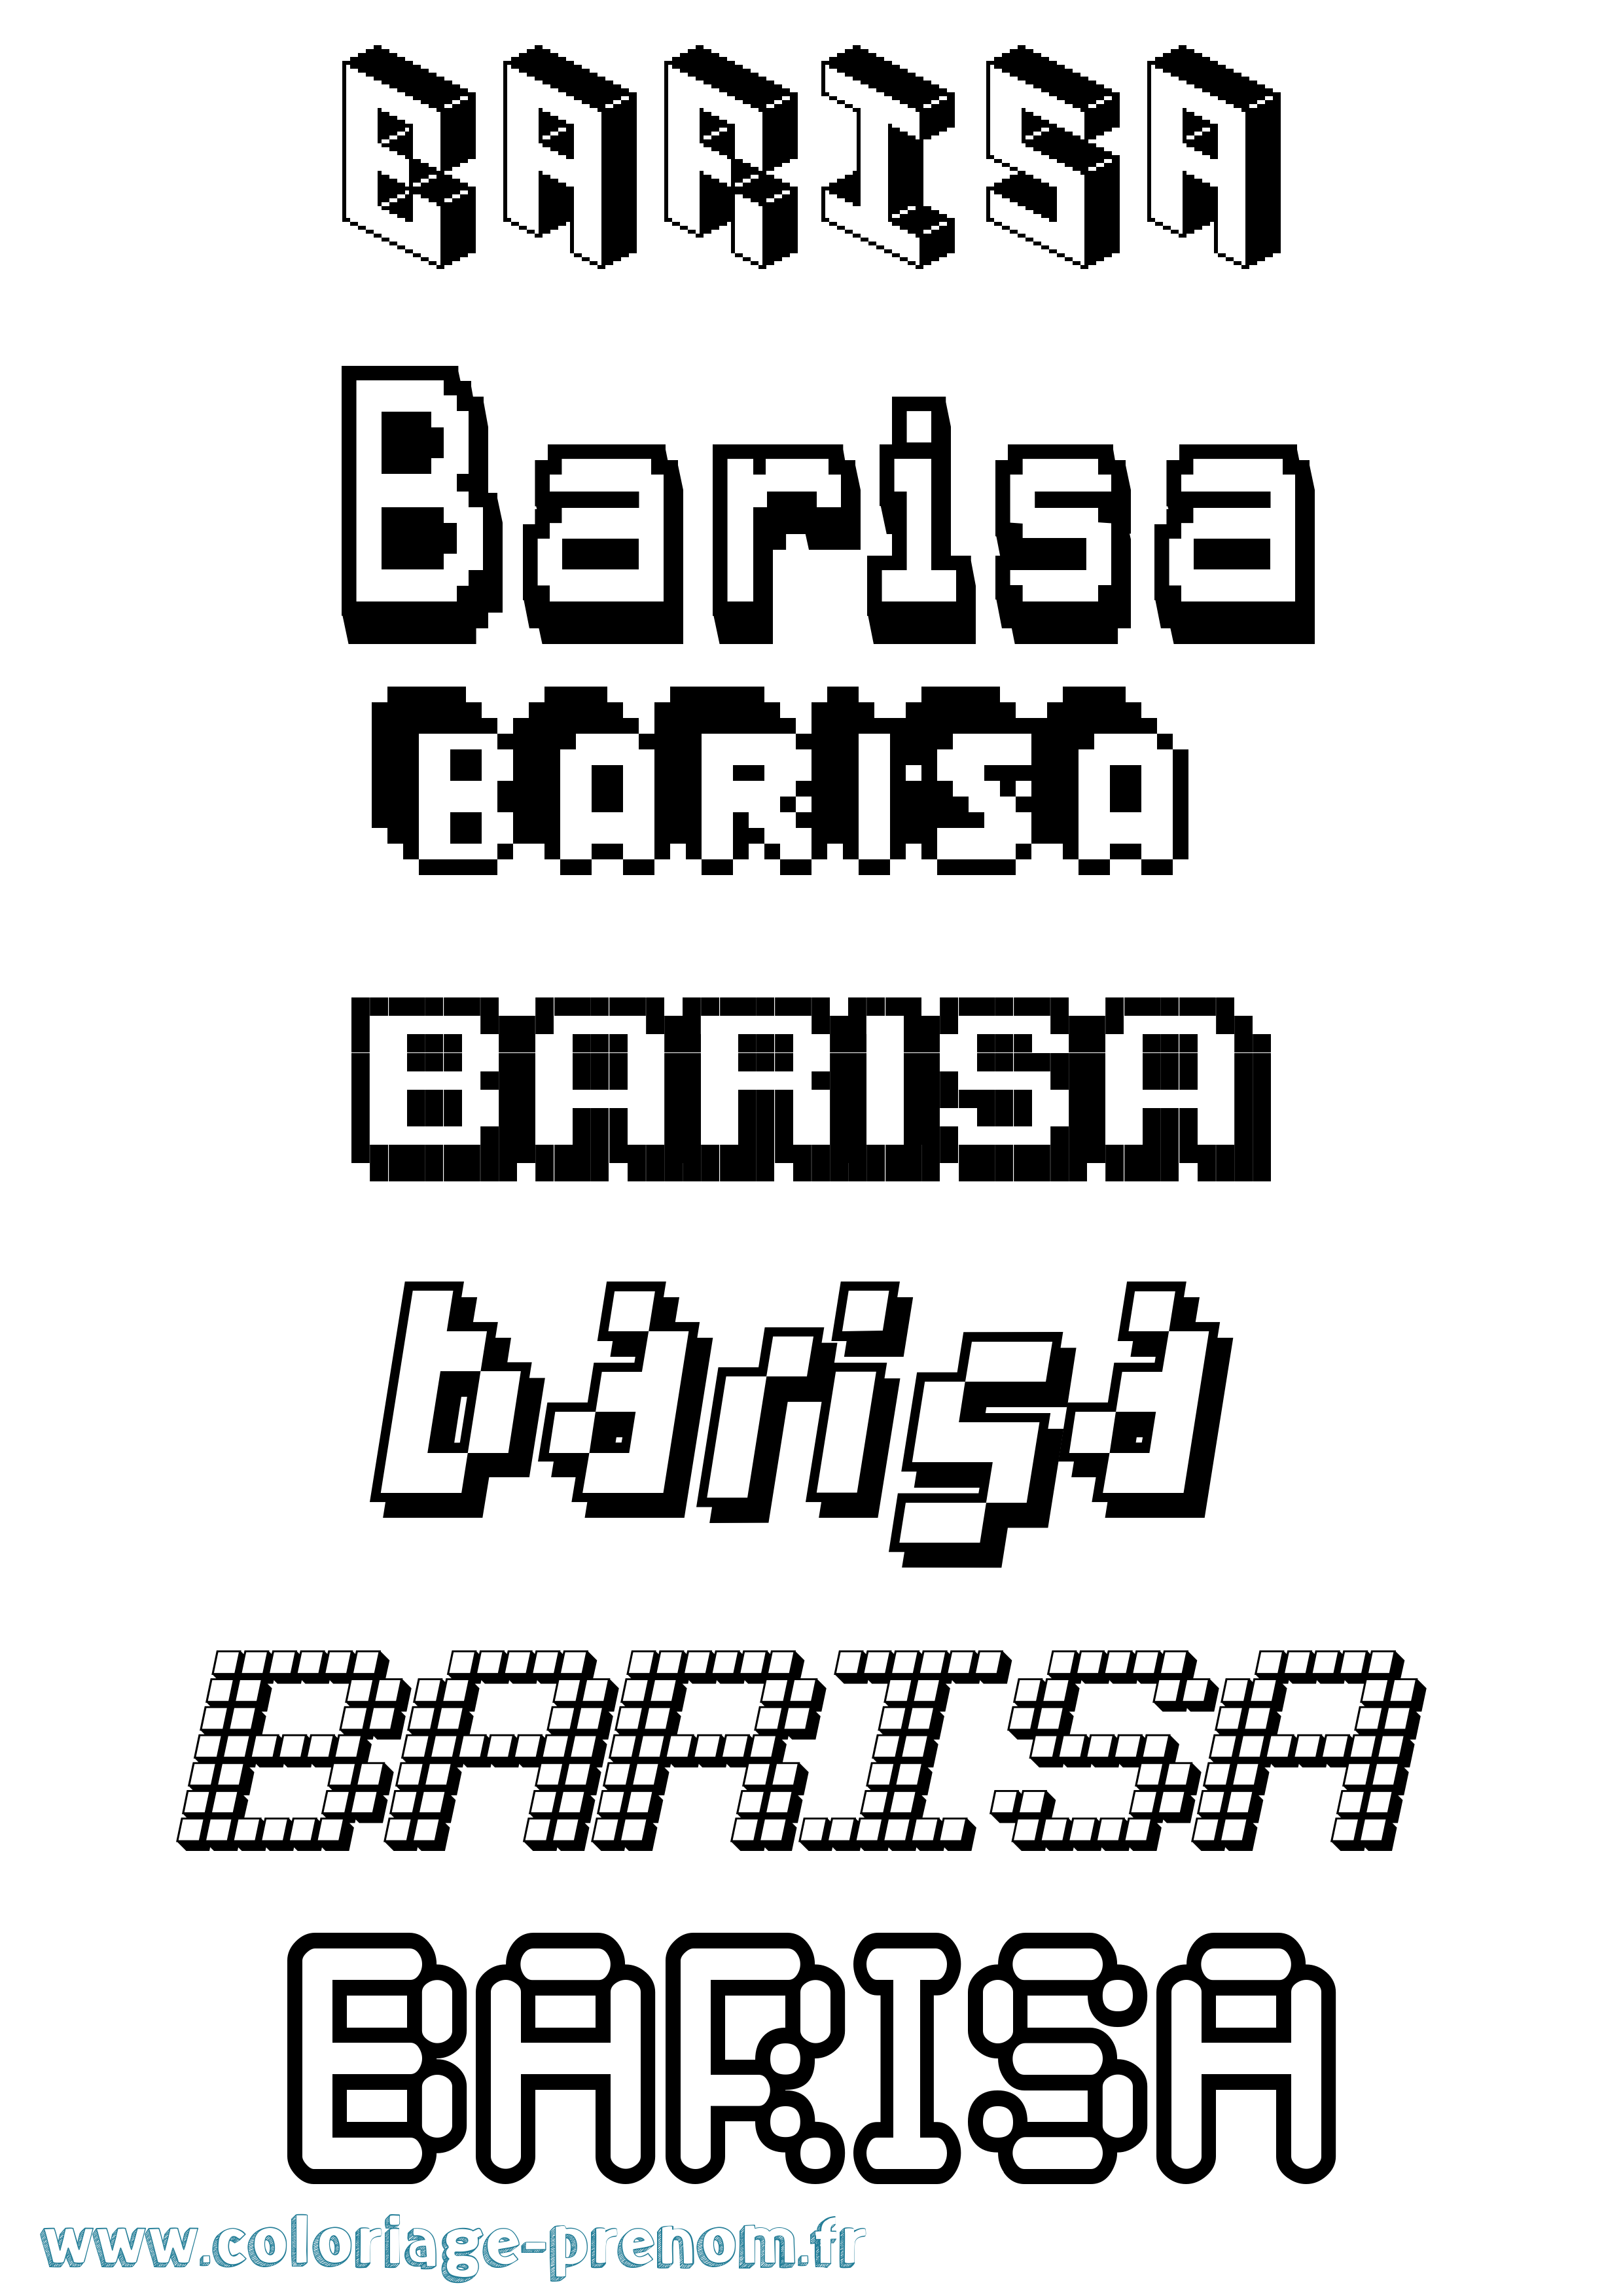 Coloriage prénom Barisa Pixel